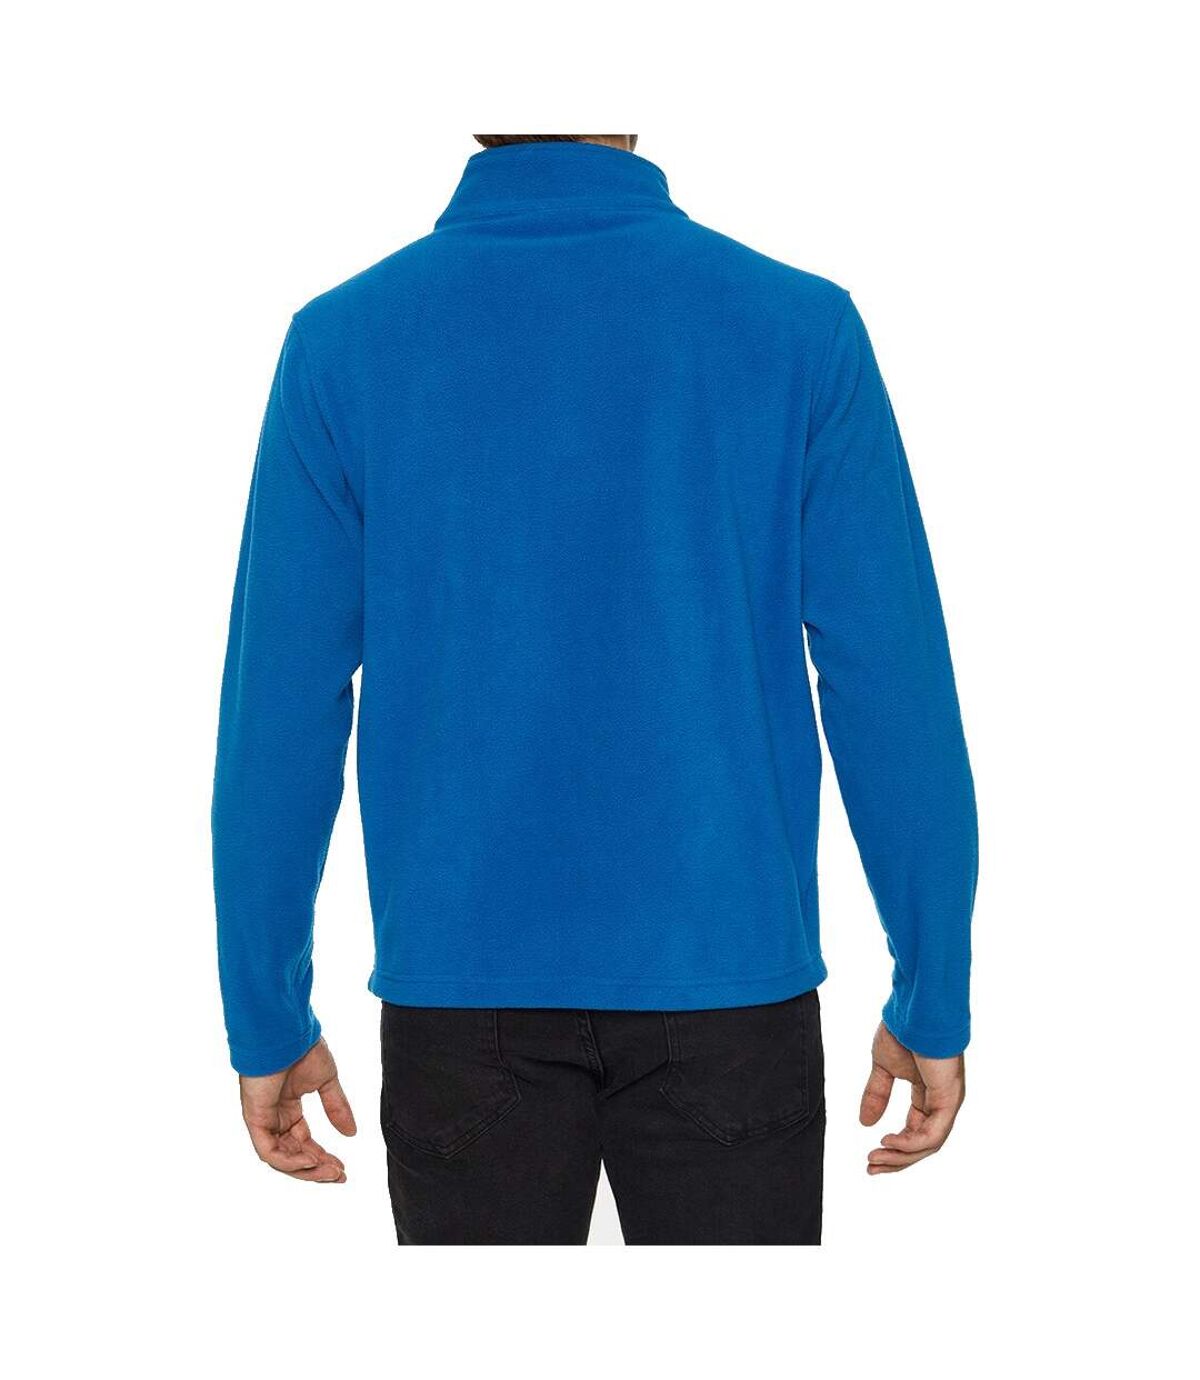 Gildan Mens Hammer Micro Fleece Jacket (Royal Blue) - UTPC3986